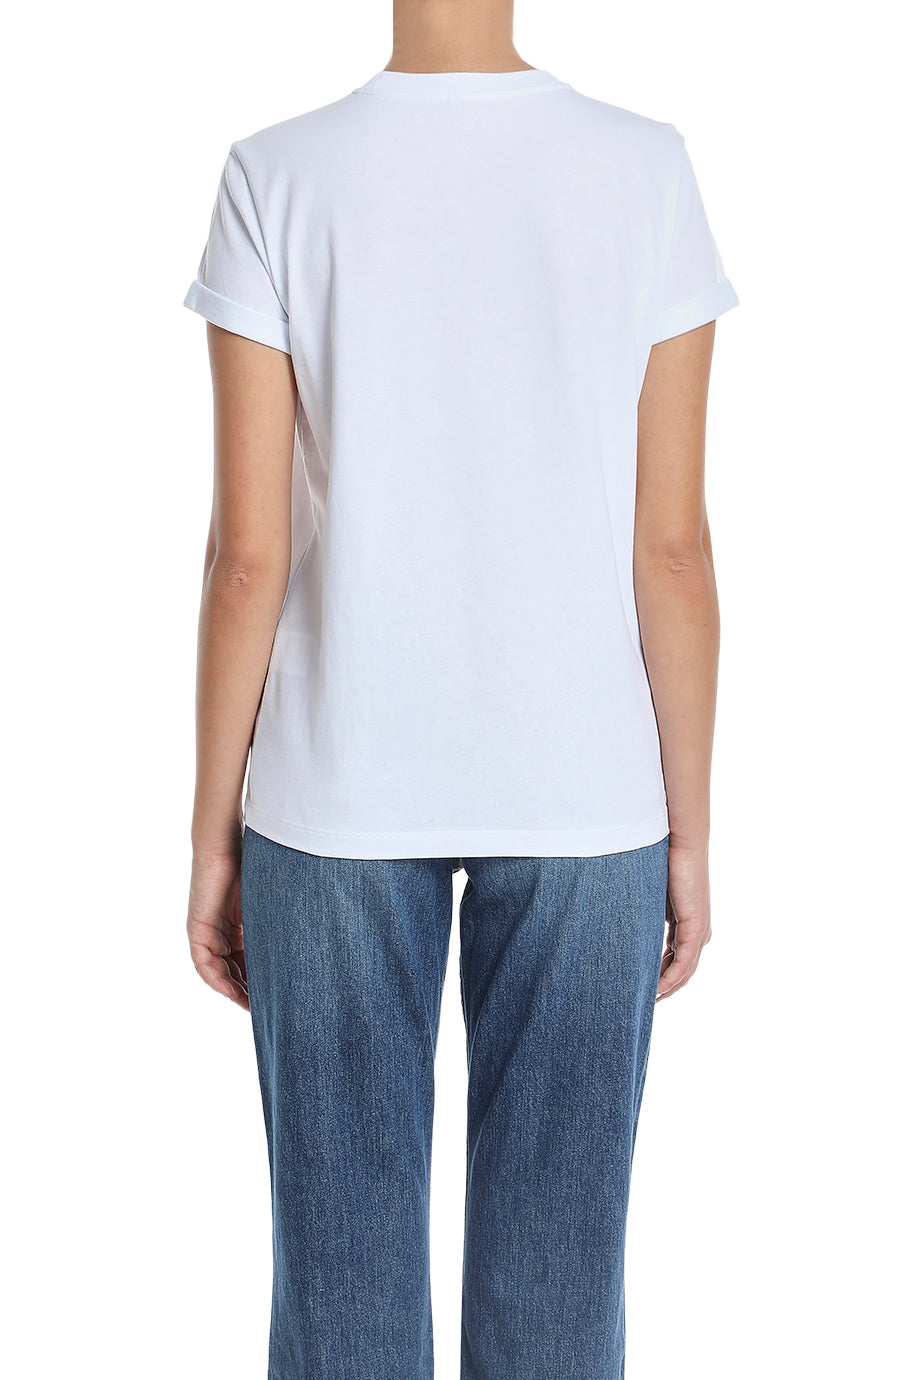 Stella Jean Roma T-Shirt